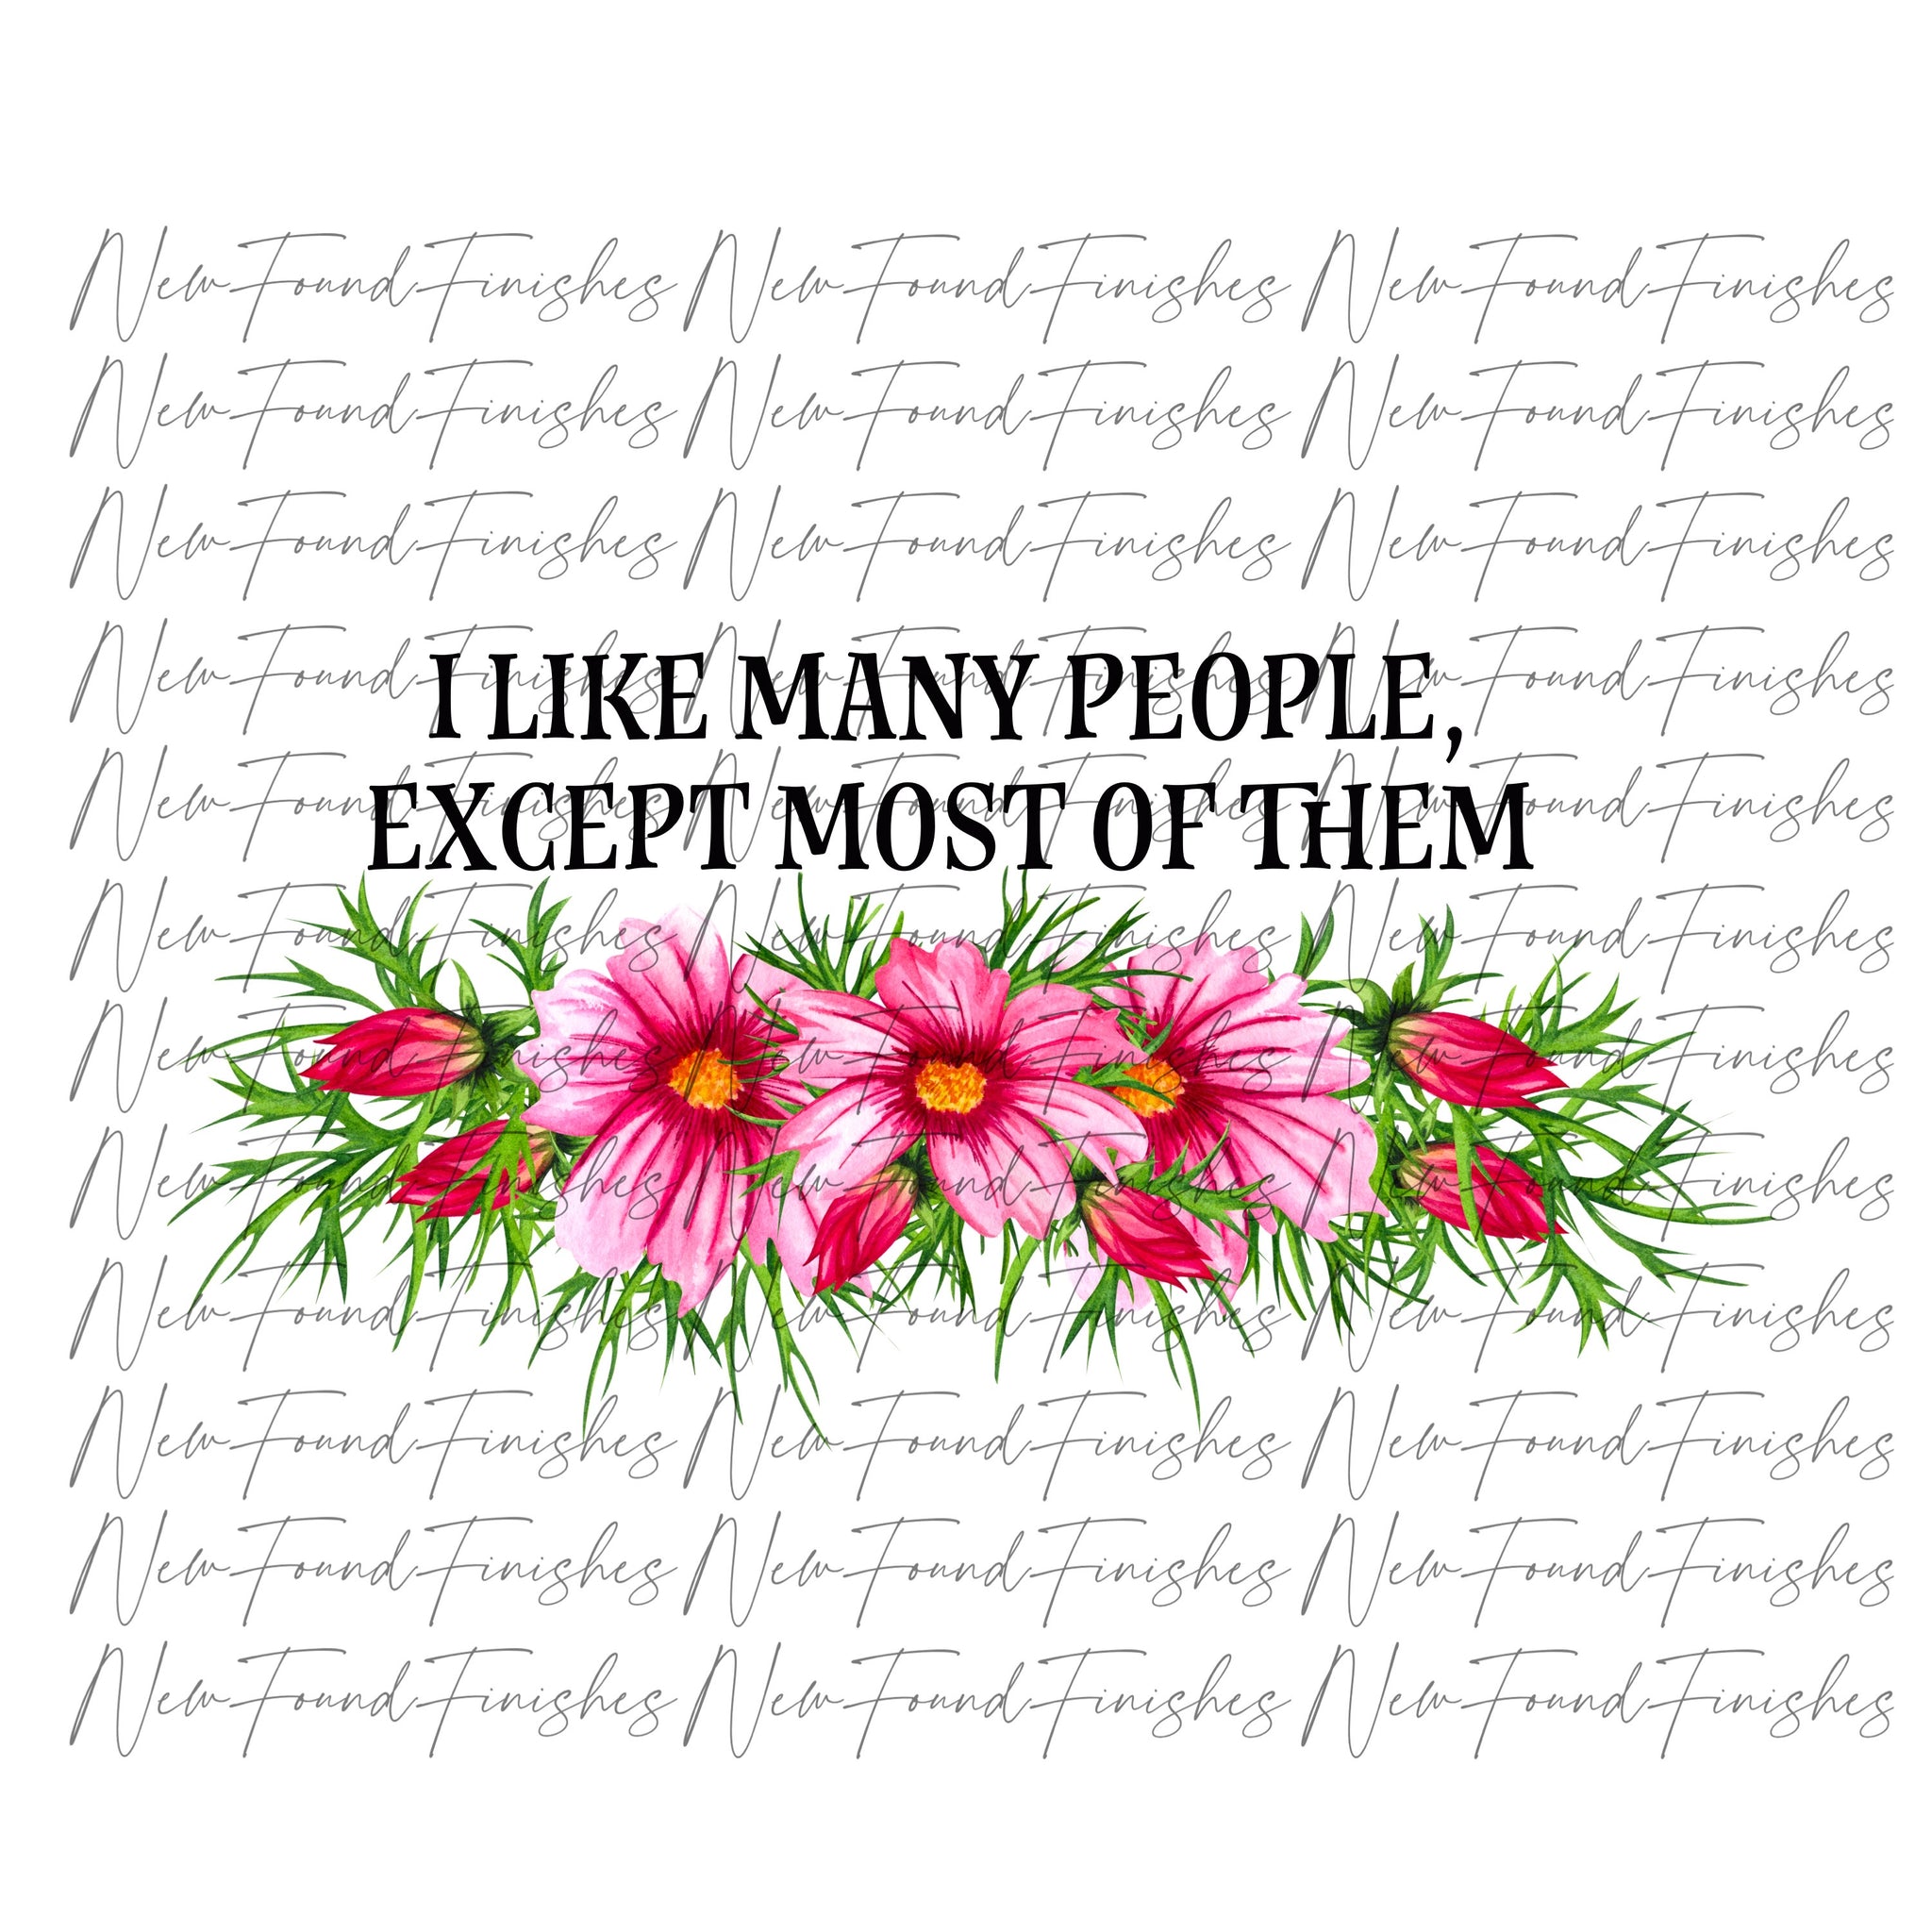 I like many people